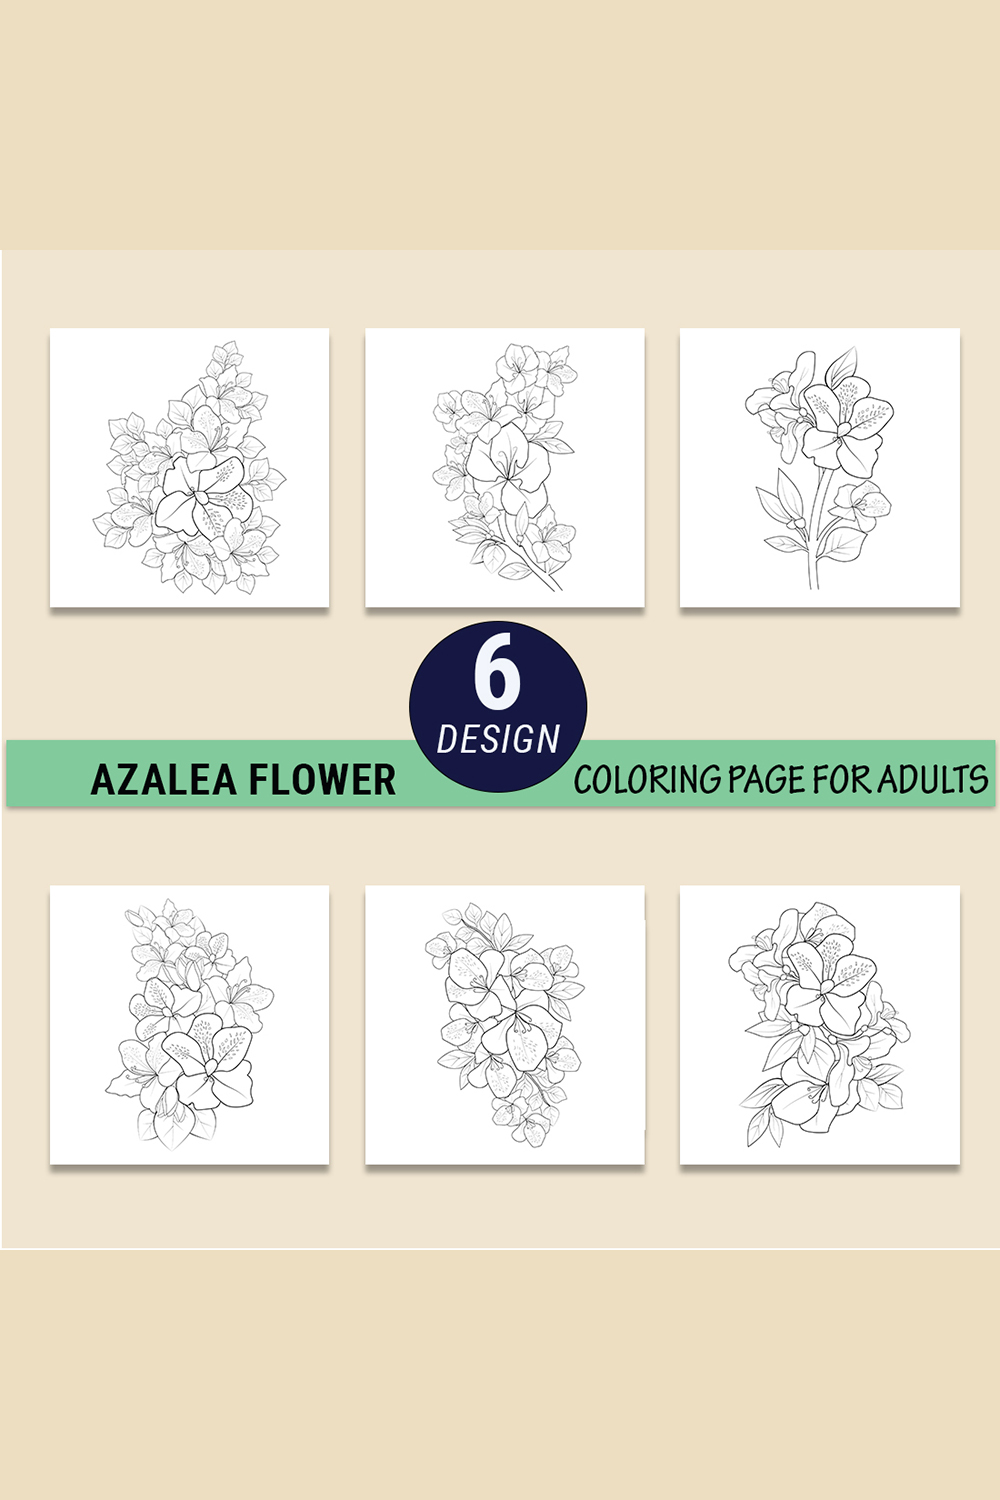 zalea flower drawing, azalea bush drawing, azalea flower outline, realistic azalea flower drawing pinterest preview image.